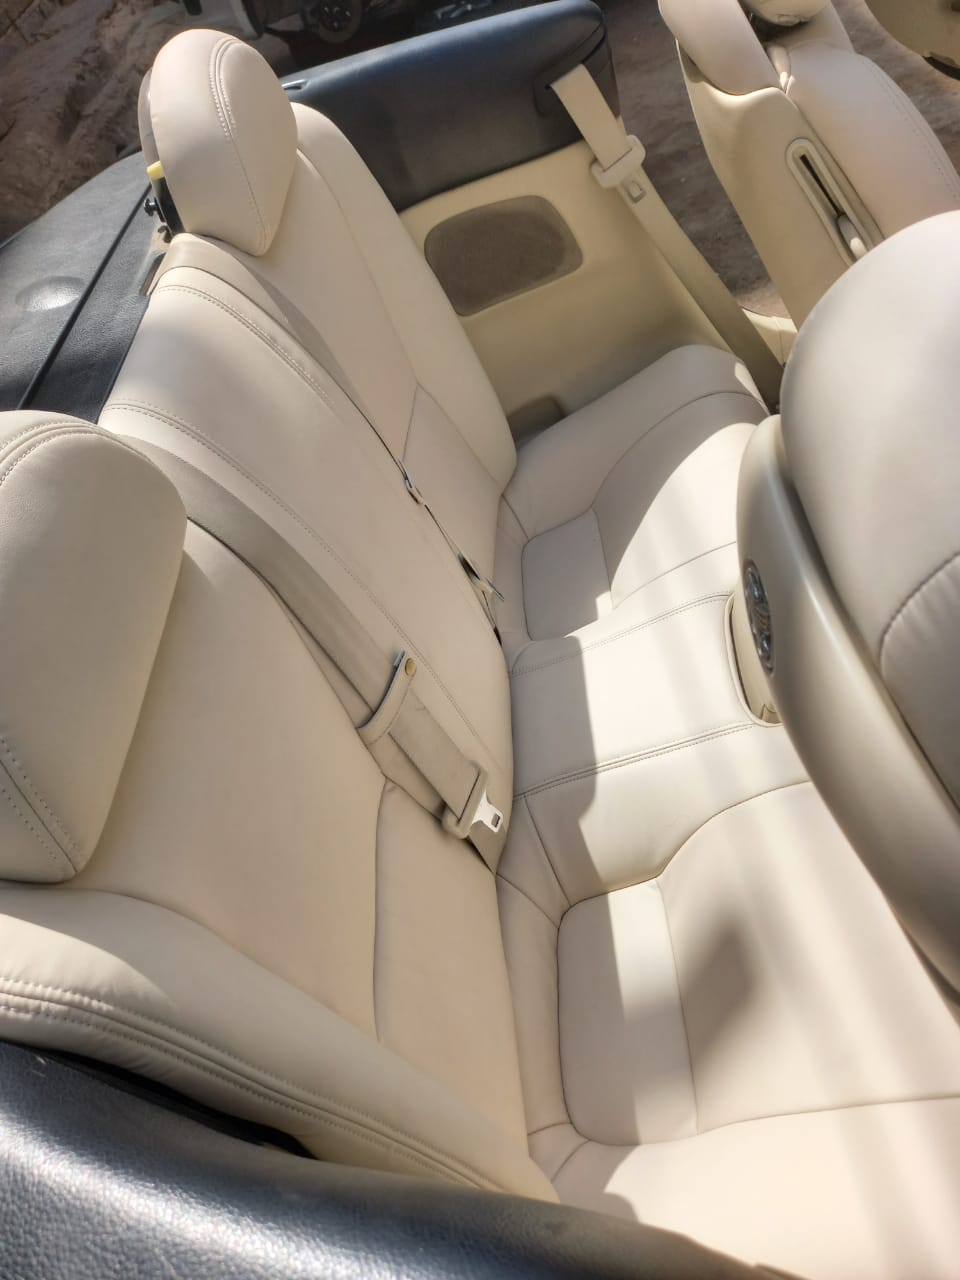 Lexus SC430 – Housse de siège de rechange OEM (ensemble complet) en cuir véritable – Blanc cassé année 2002-2010